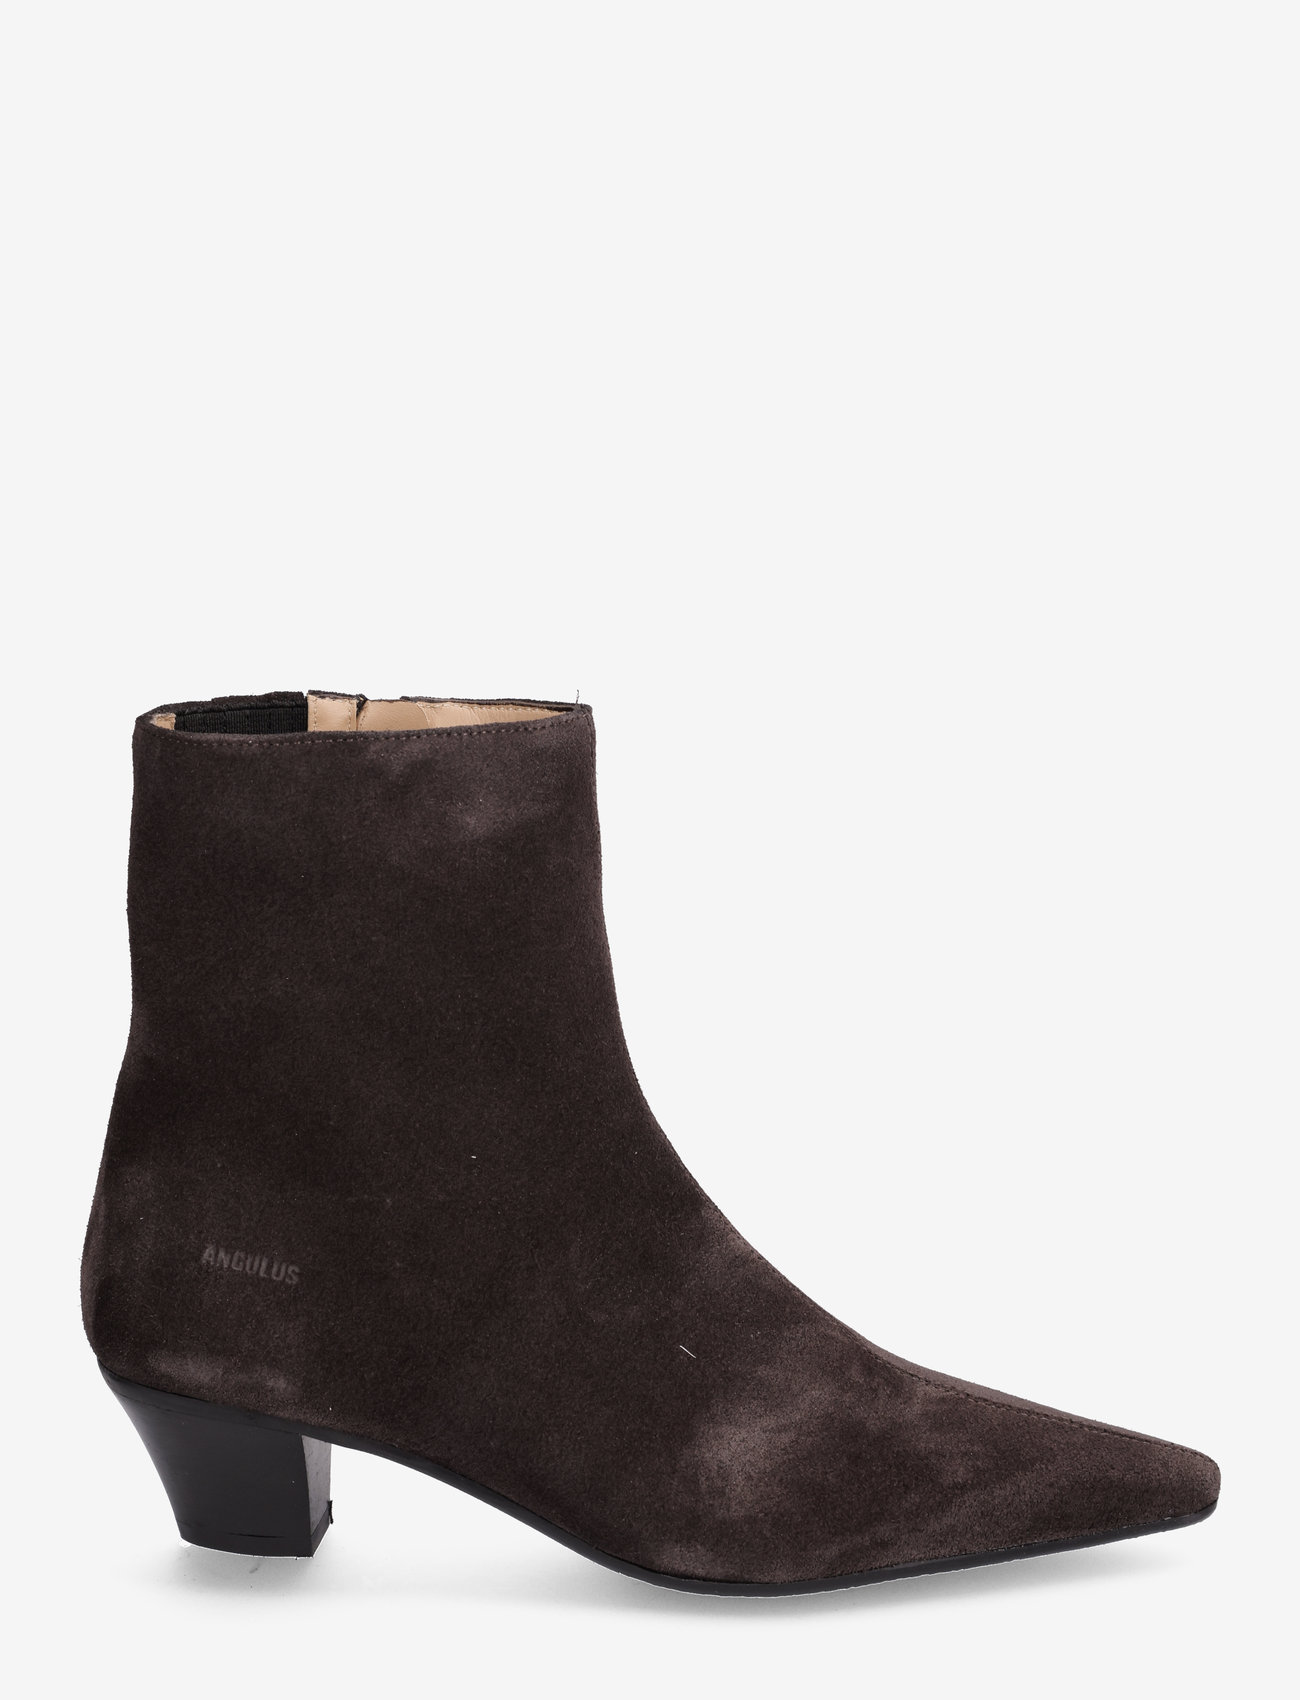 ANGULUS - Boots - Block heel with zipper - high heel - 1716/001 espresso - 1